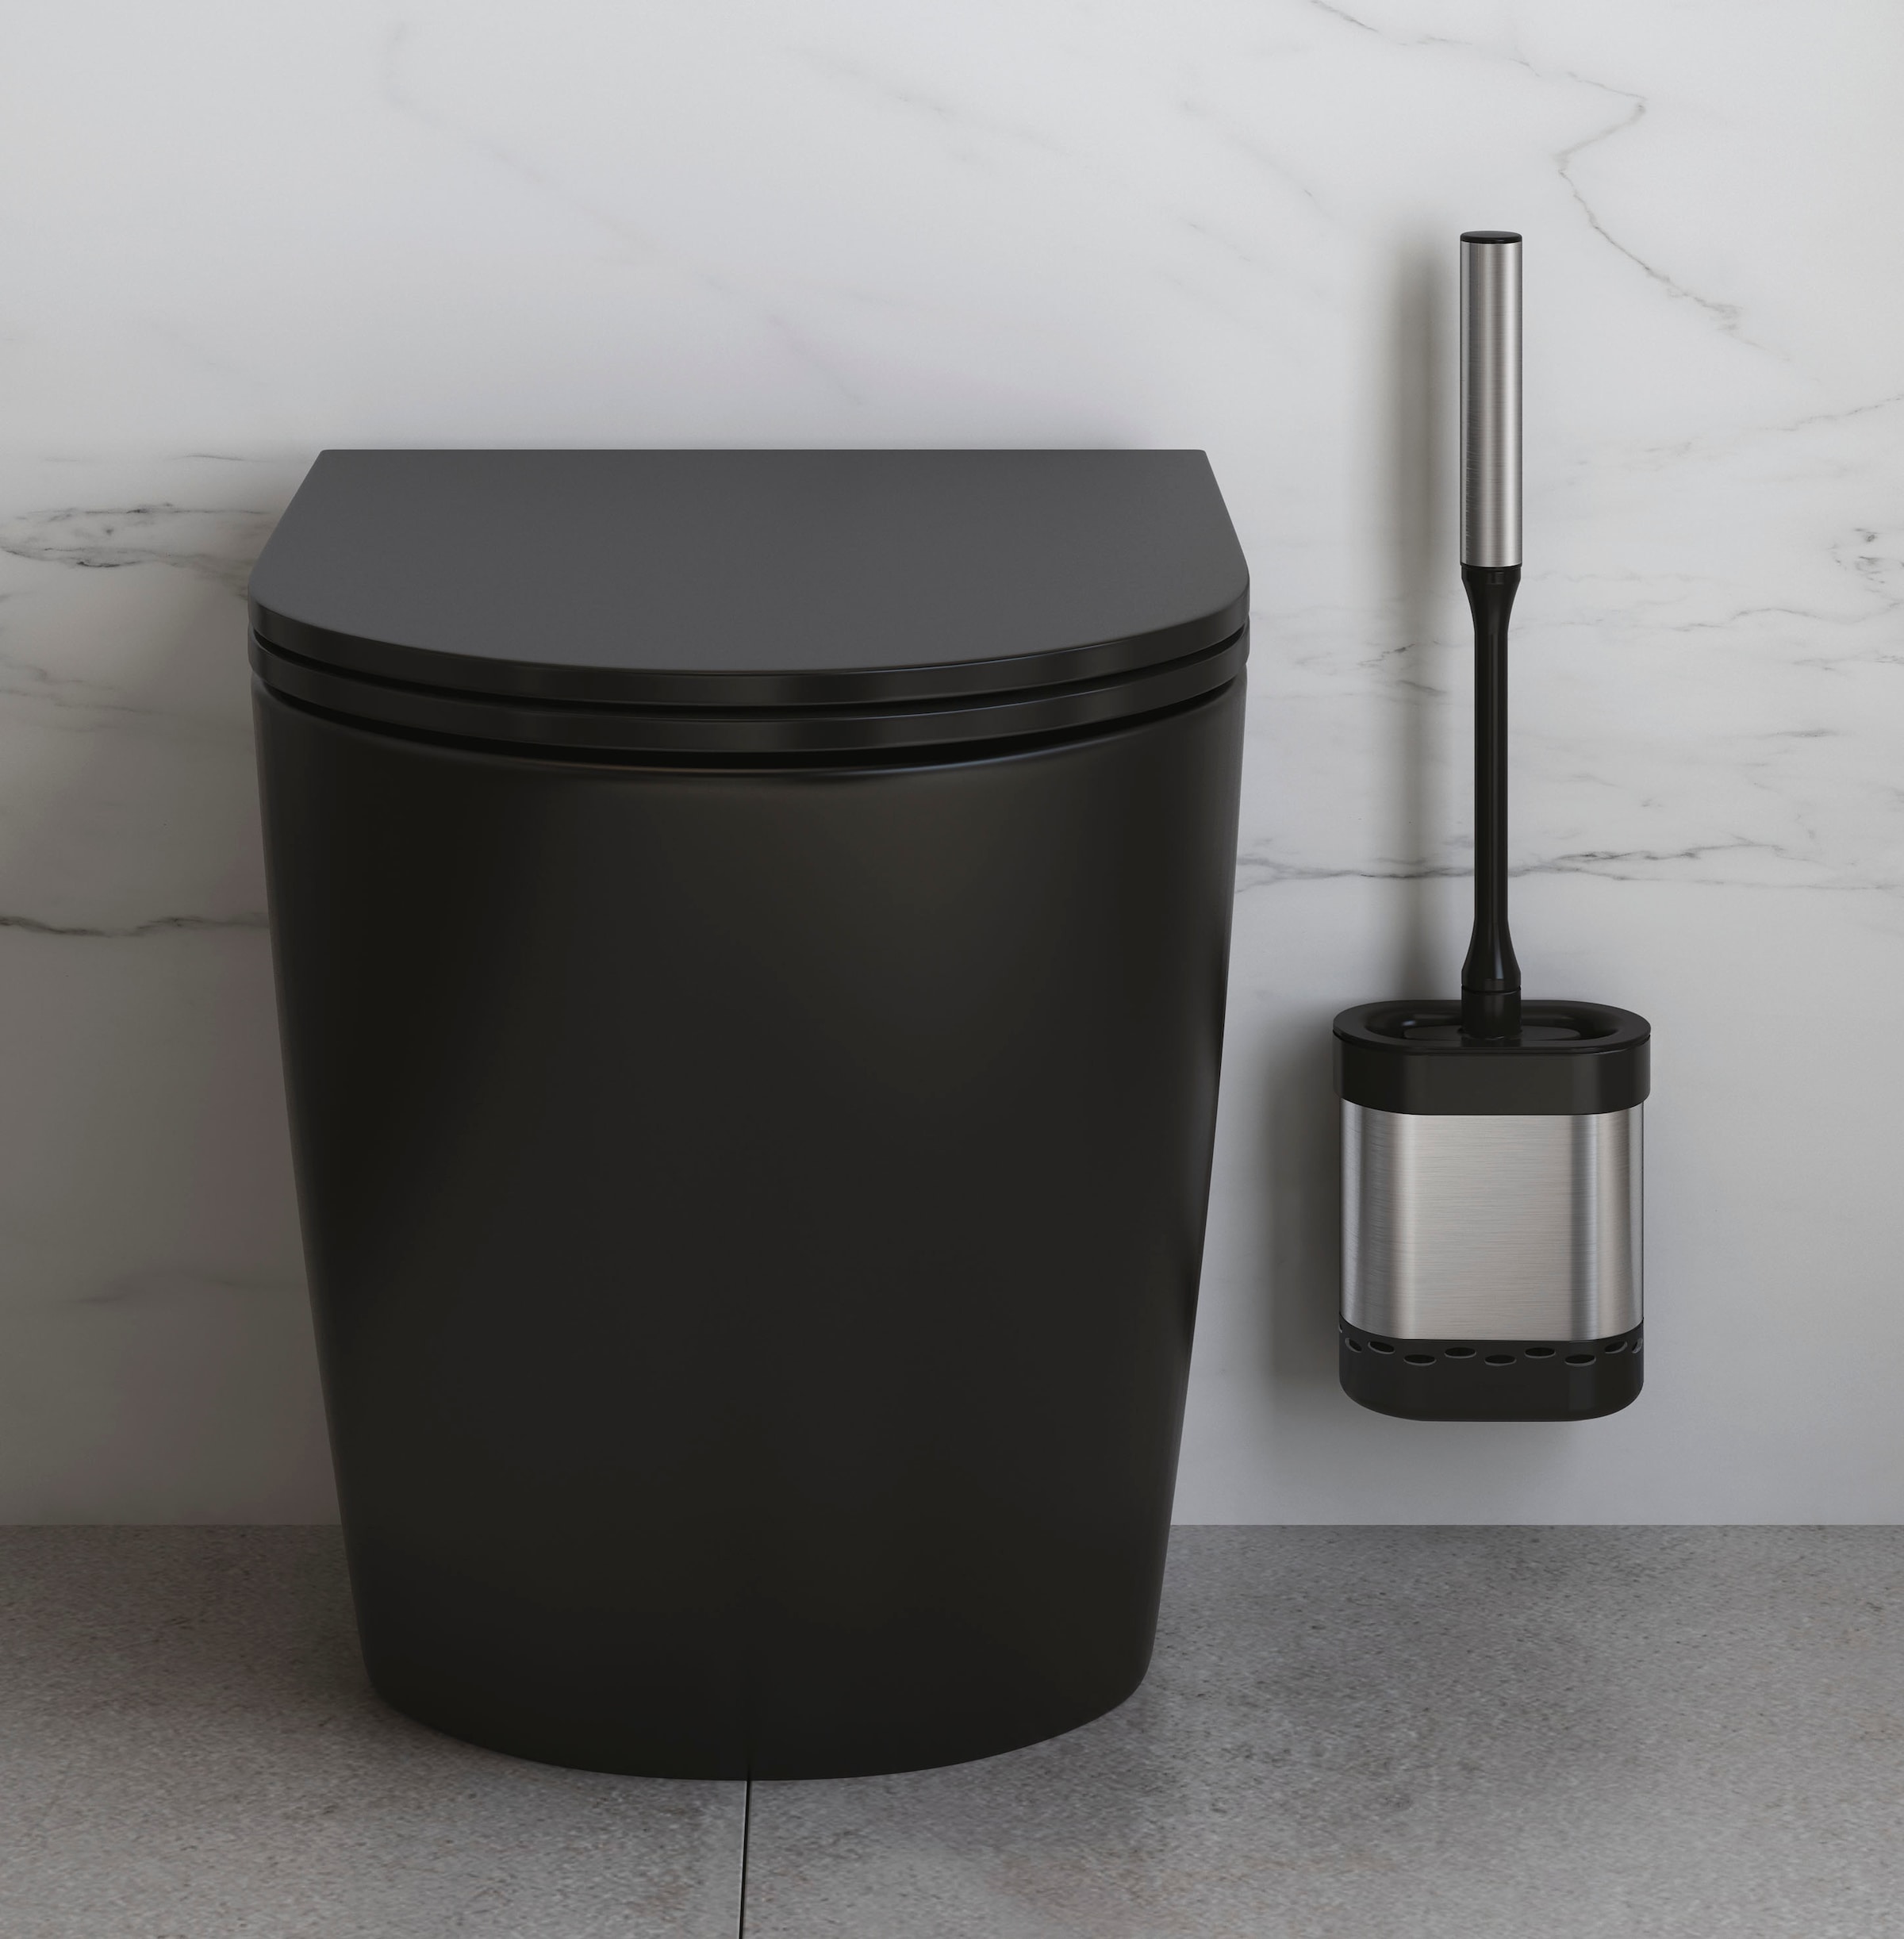 Bürste kaufen »Cleany«, aus Inox flach WC Edelstahl-Kunststoff-Silikon, Metaltex WC-Reinigungsbürste online